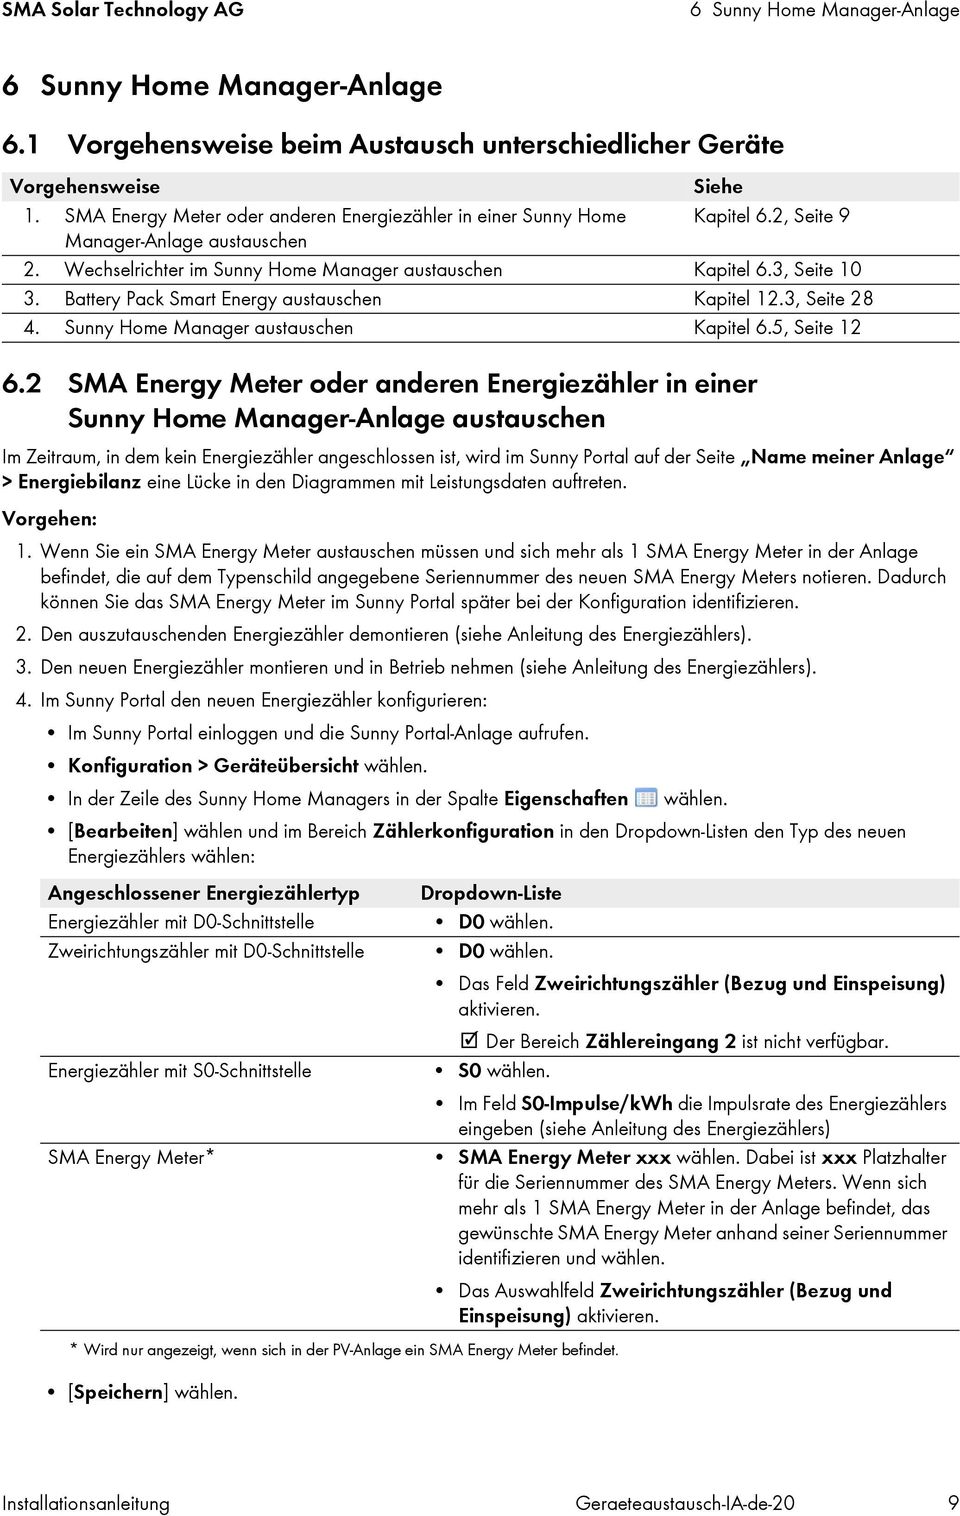 Battery Pack Smart Energy austauschen Kapitel 12.3, Seite 28 4. Sunny Home Manager austauschen Kapitel 6.5, Seite 12 6.